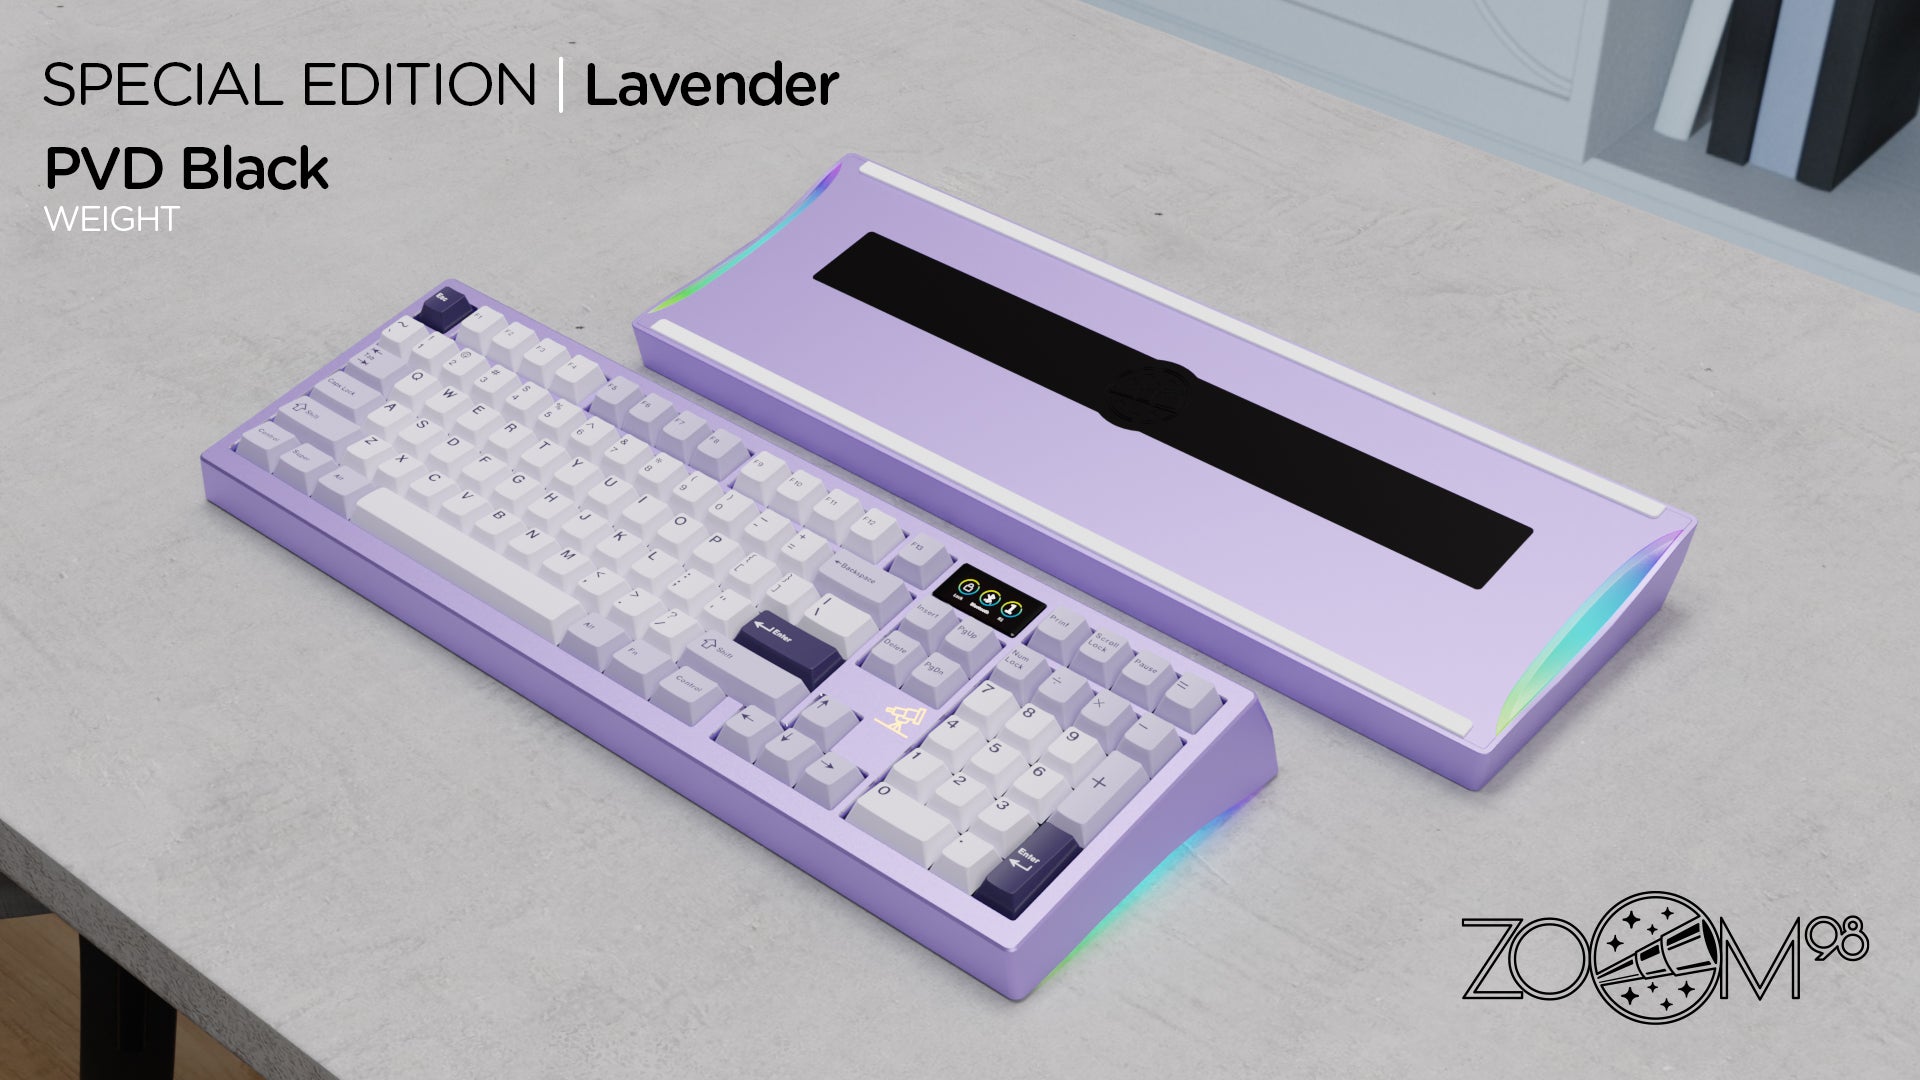 Zoom98 SE Anodized Lavender